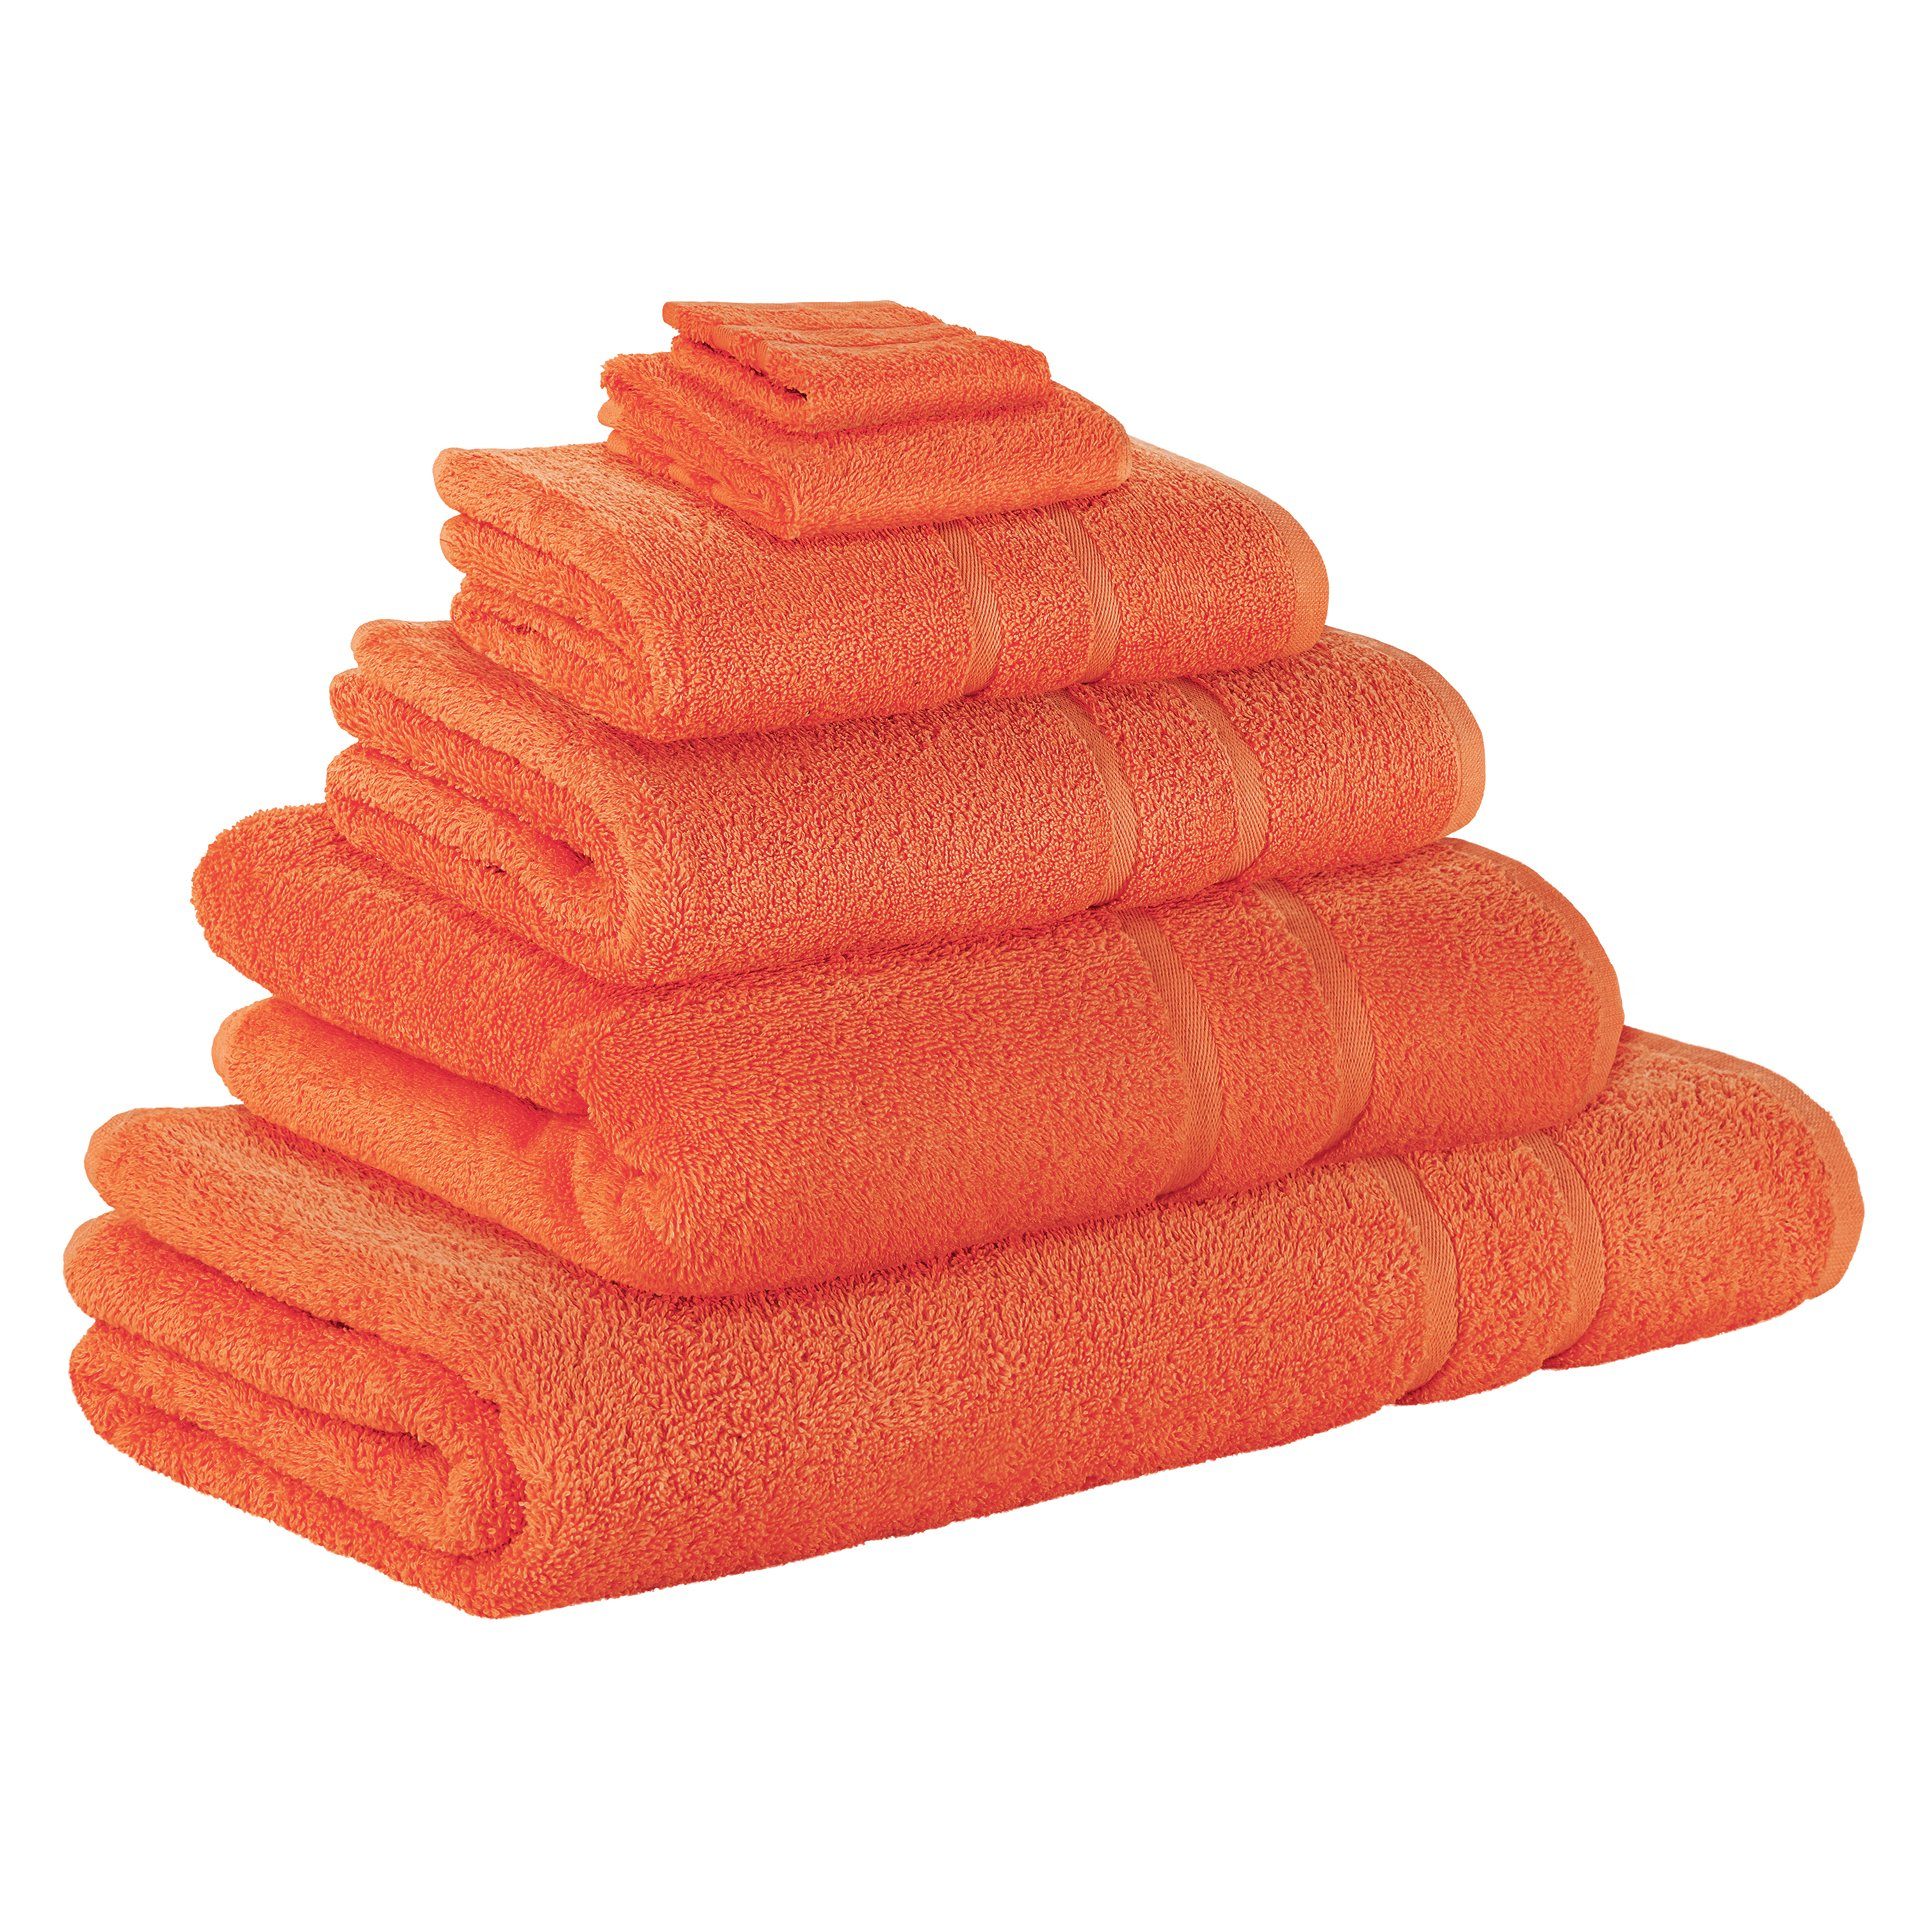 StickandShine Handtuch Set 1x Waschlappen 1x Gästehandtuch 1x Handtuch 1x Duschtuch 1x Badetuch 1x Saunatuch als SET in verschiedenen Farben (6 Teilig) 100% Baumwolle 500 GSM Frottee 6er Handtuch Pack, 100% Baumwolle 500 GSM Orange